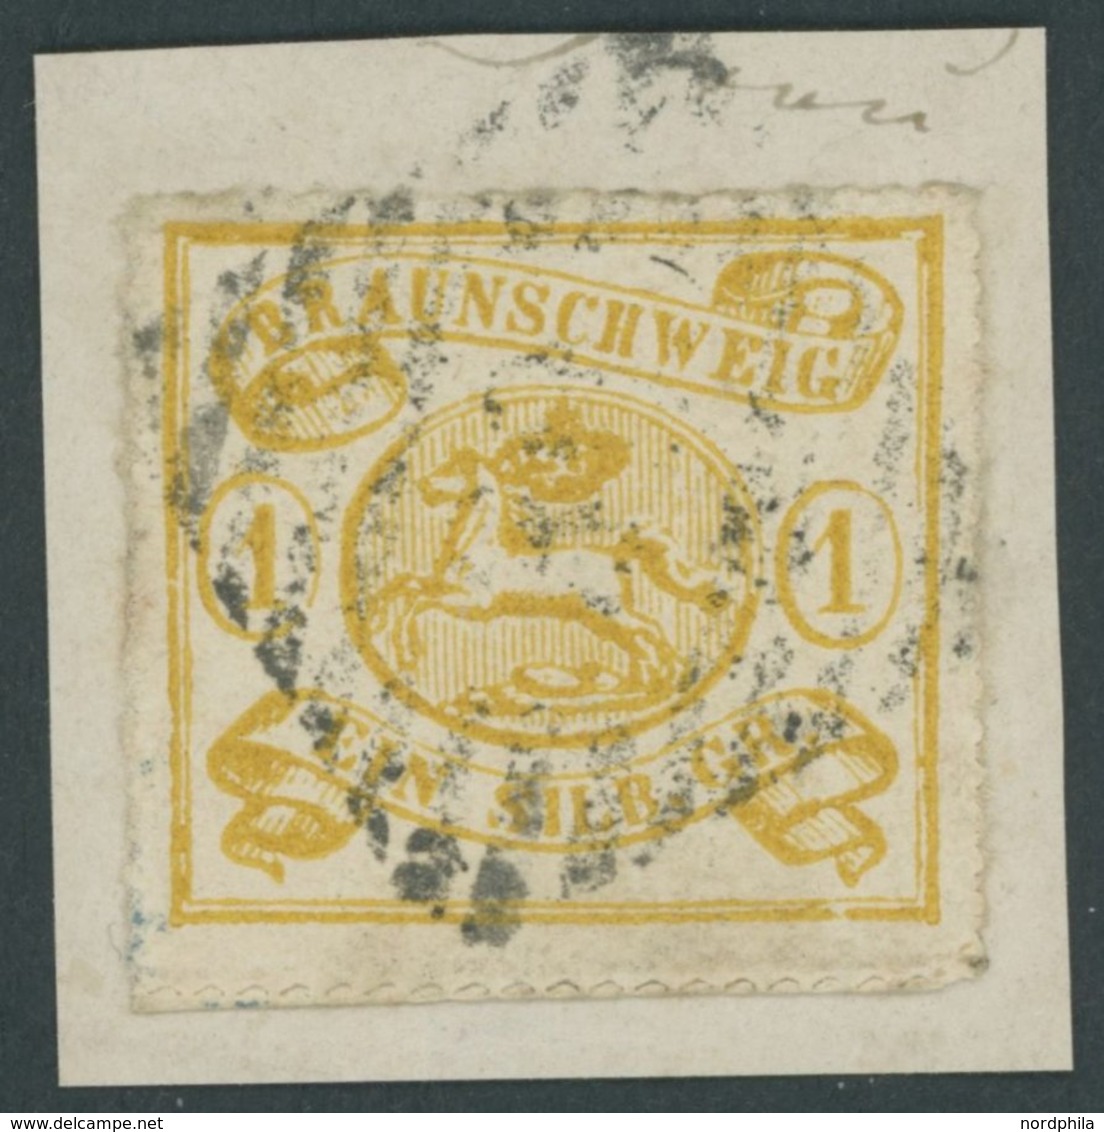 BRAUNSCHWEIG 14A BrfStk, 1864, 1 Sgr. Mittelgelbocker, Durchstochen 16, Prachtbriefstück, Mi. 180.- - Braunschweig